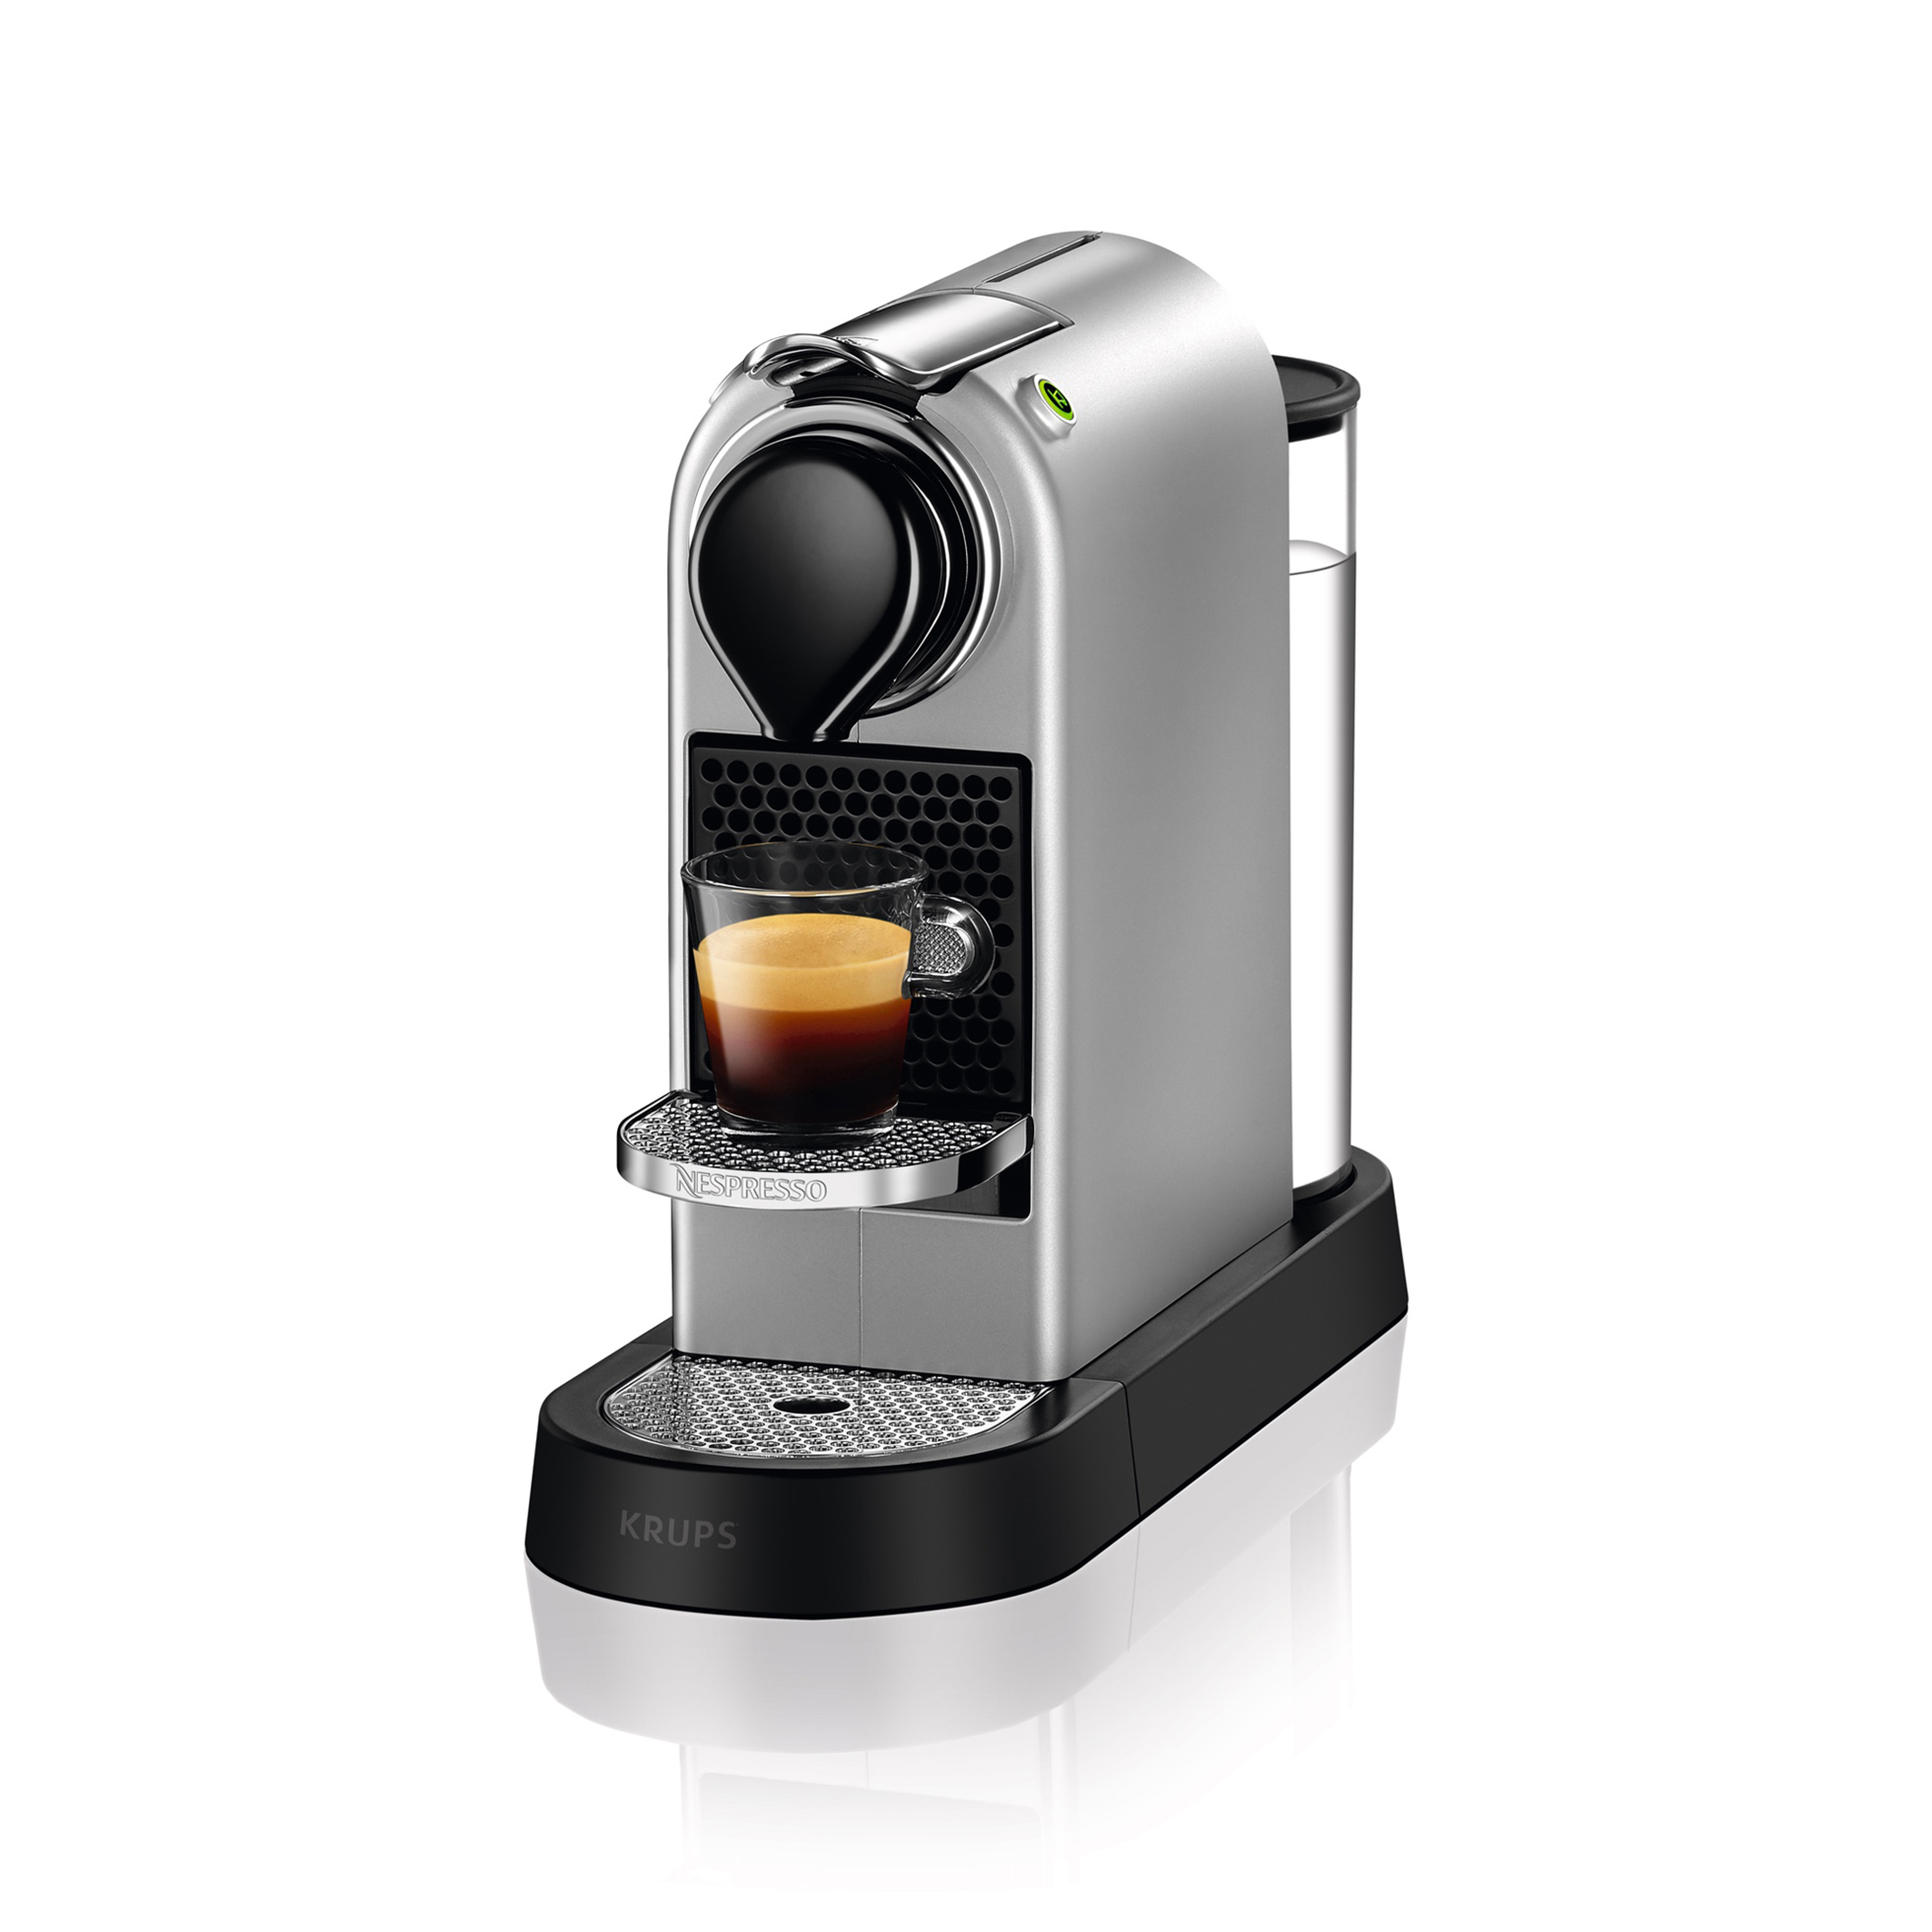 Moederland verslag doen van Meestal Koffie apparaat nespresso citz yy4118fd zilver Krups | La Redoute